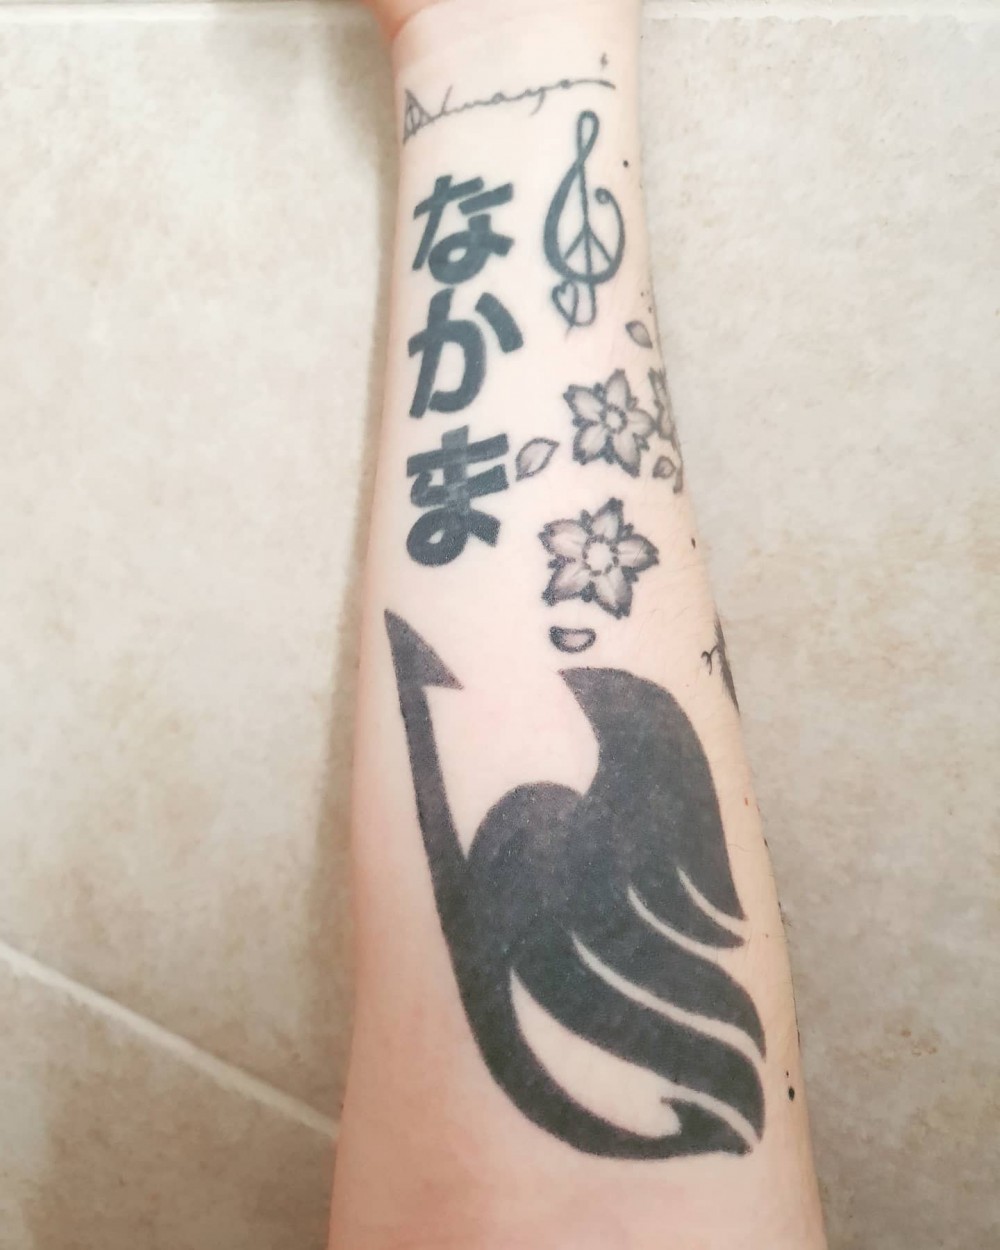 fairy tail tattoo meaning, fairy tail tattoo natsu, fairy tail tattoo erza, anime tattoos, fairy tail tattoo gray, fairy tail quotes, fairy tail temporary tattoo, fairy tail emblem tattoo